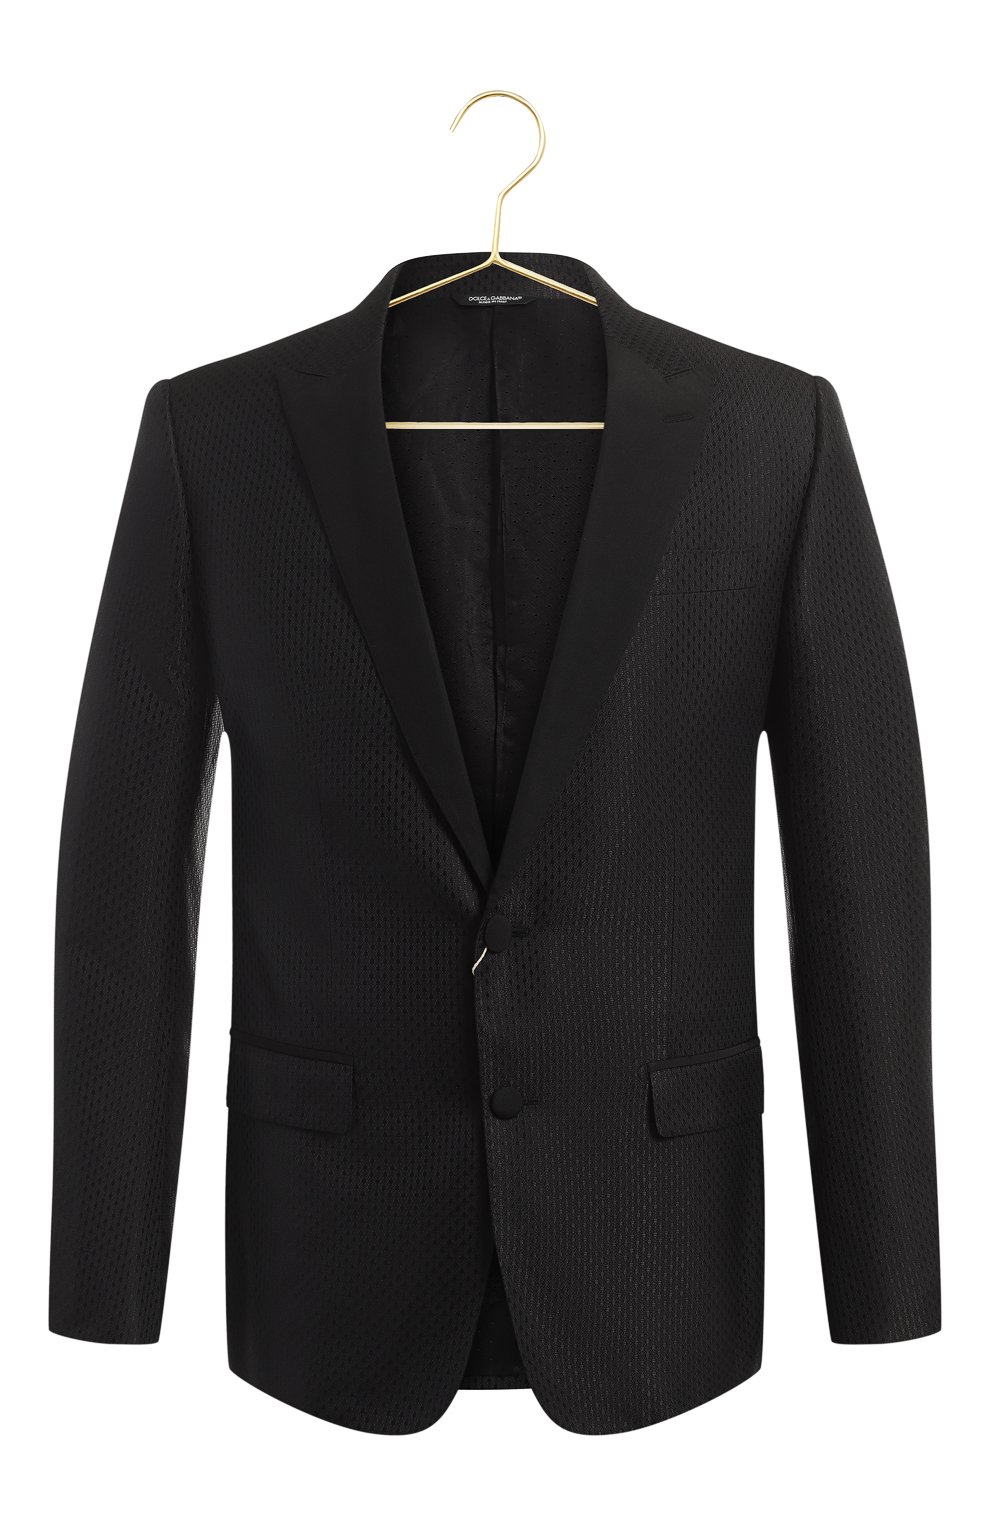 Комплект из пиджака и жилета | Dolce & Gabbana | Чёрный - 2